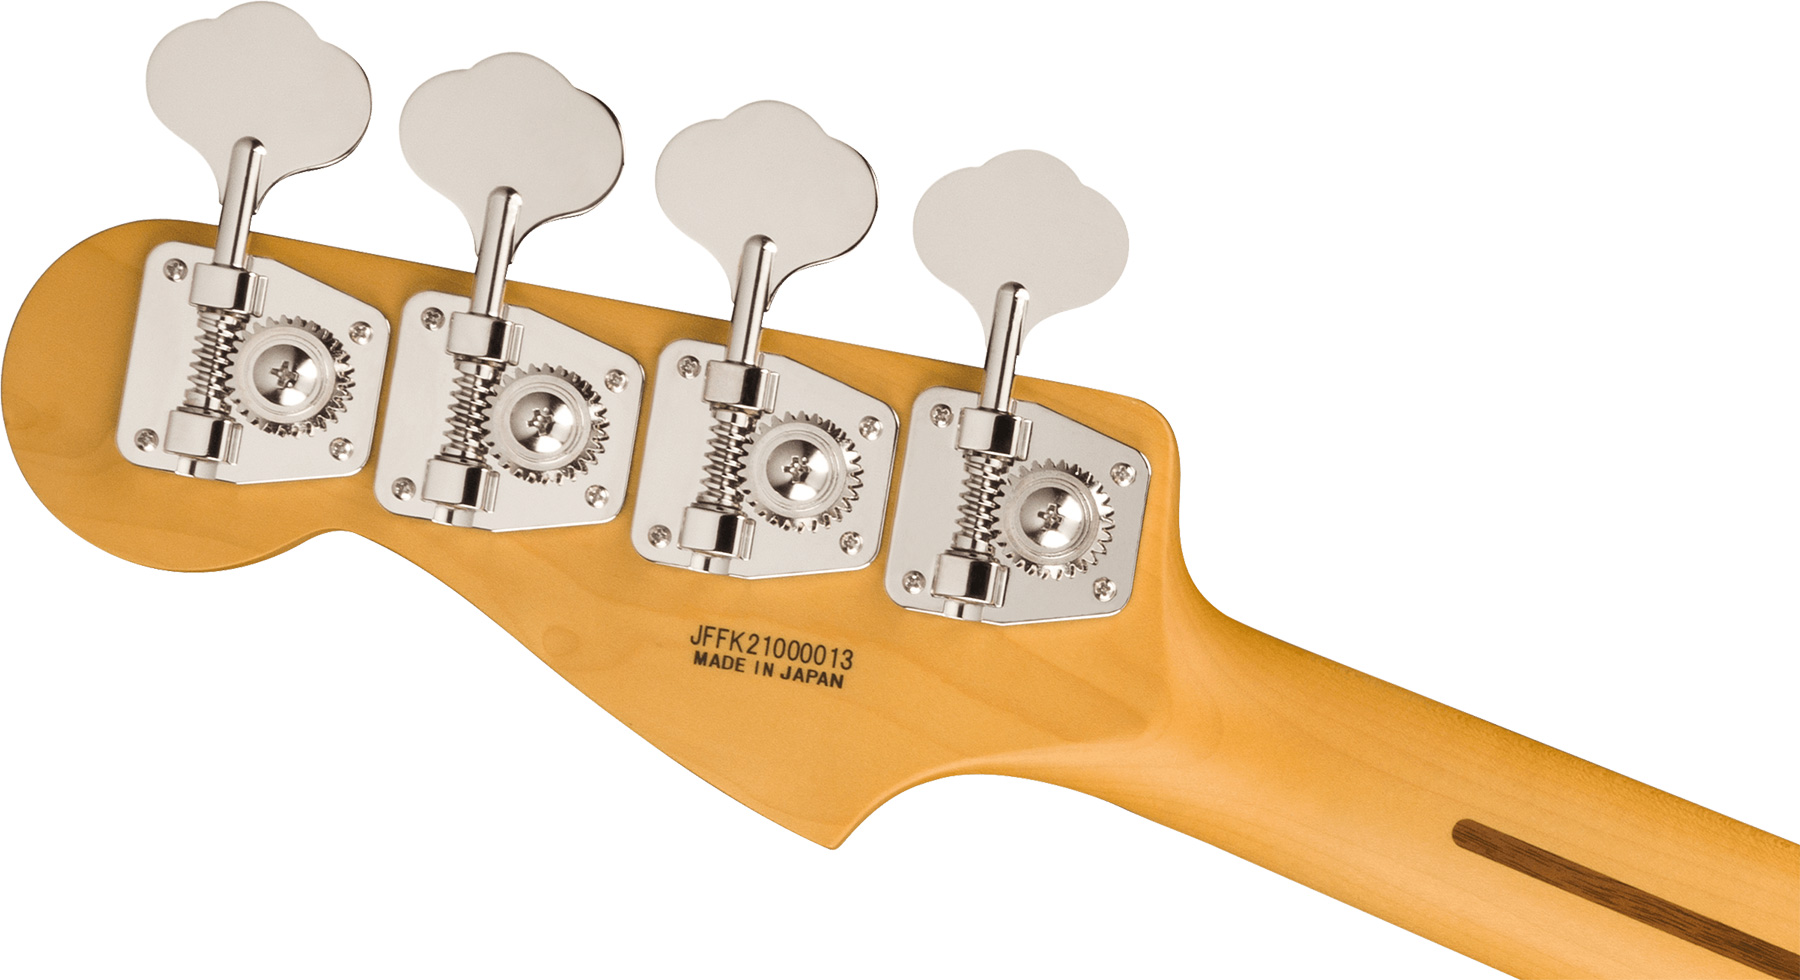 Fender Precision Bass Aerodyne Special Jap Rw - Bright White - Bajo eléctrico de cuerpo sólido - Variation 3